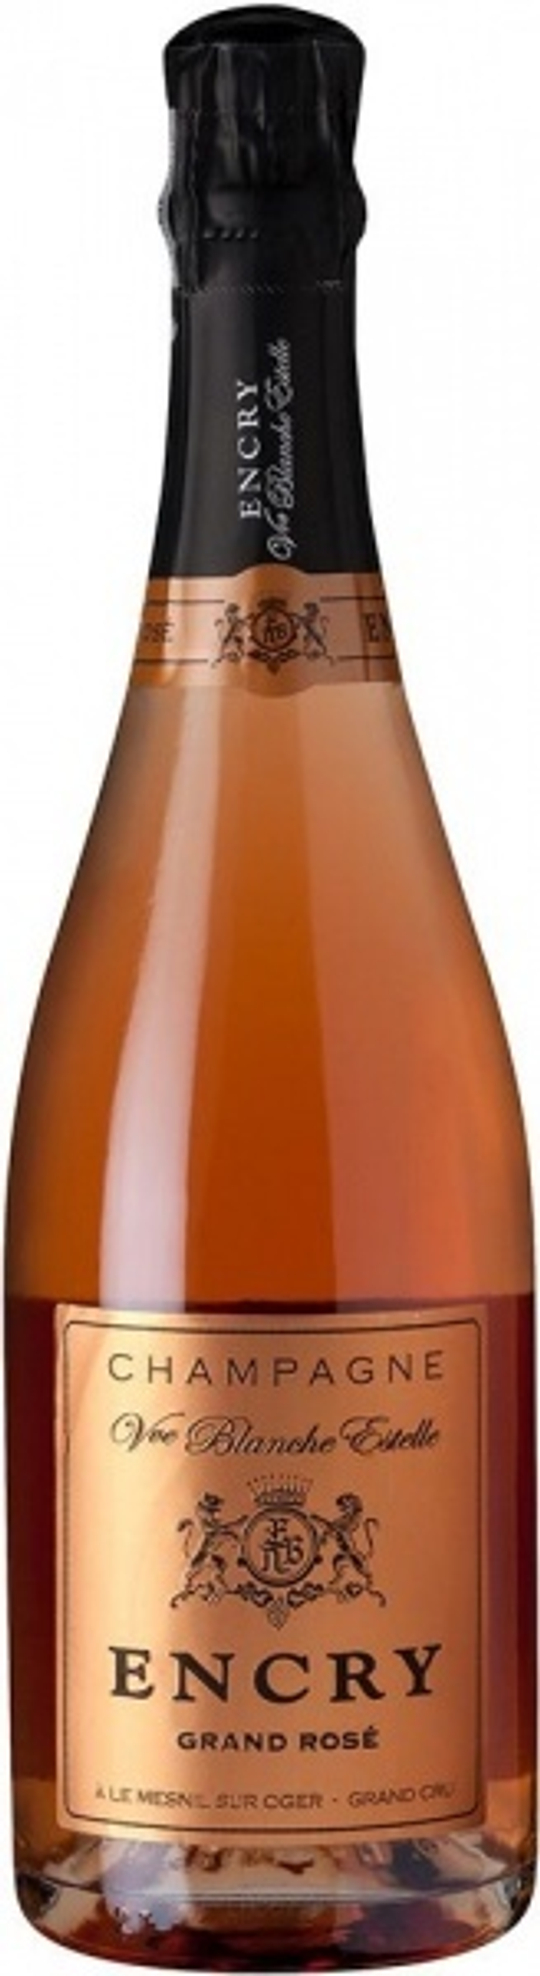 Шампанское Encry Grand Rose Extra Brut, 0,75 л.